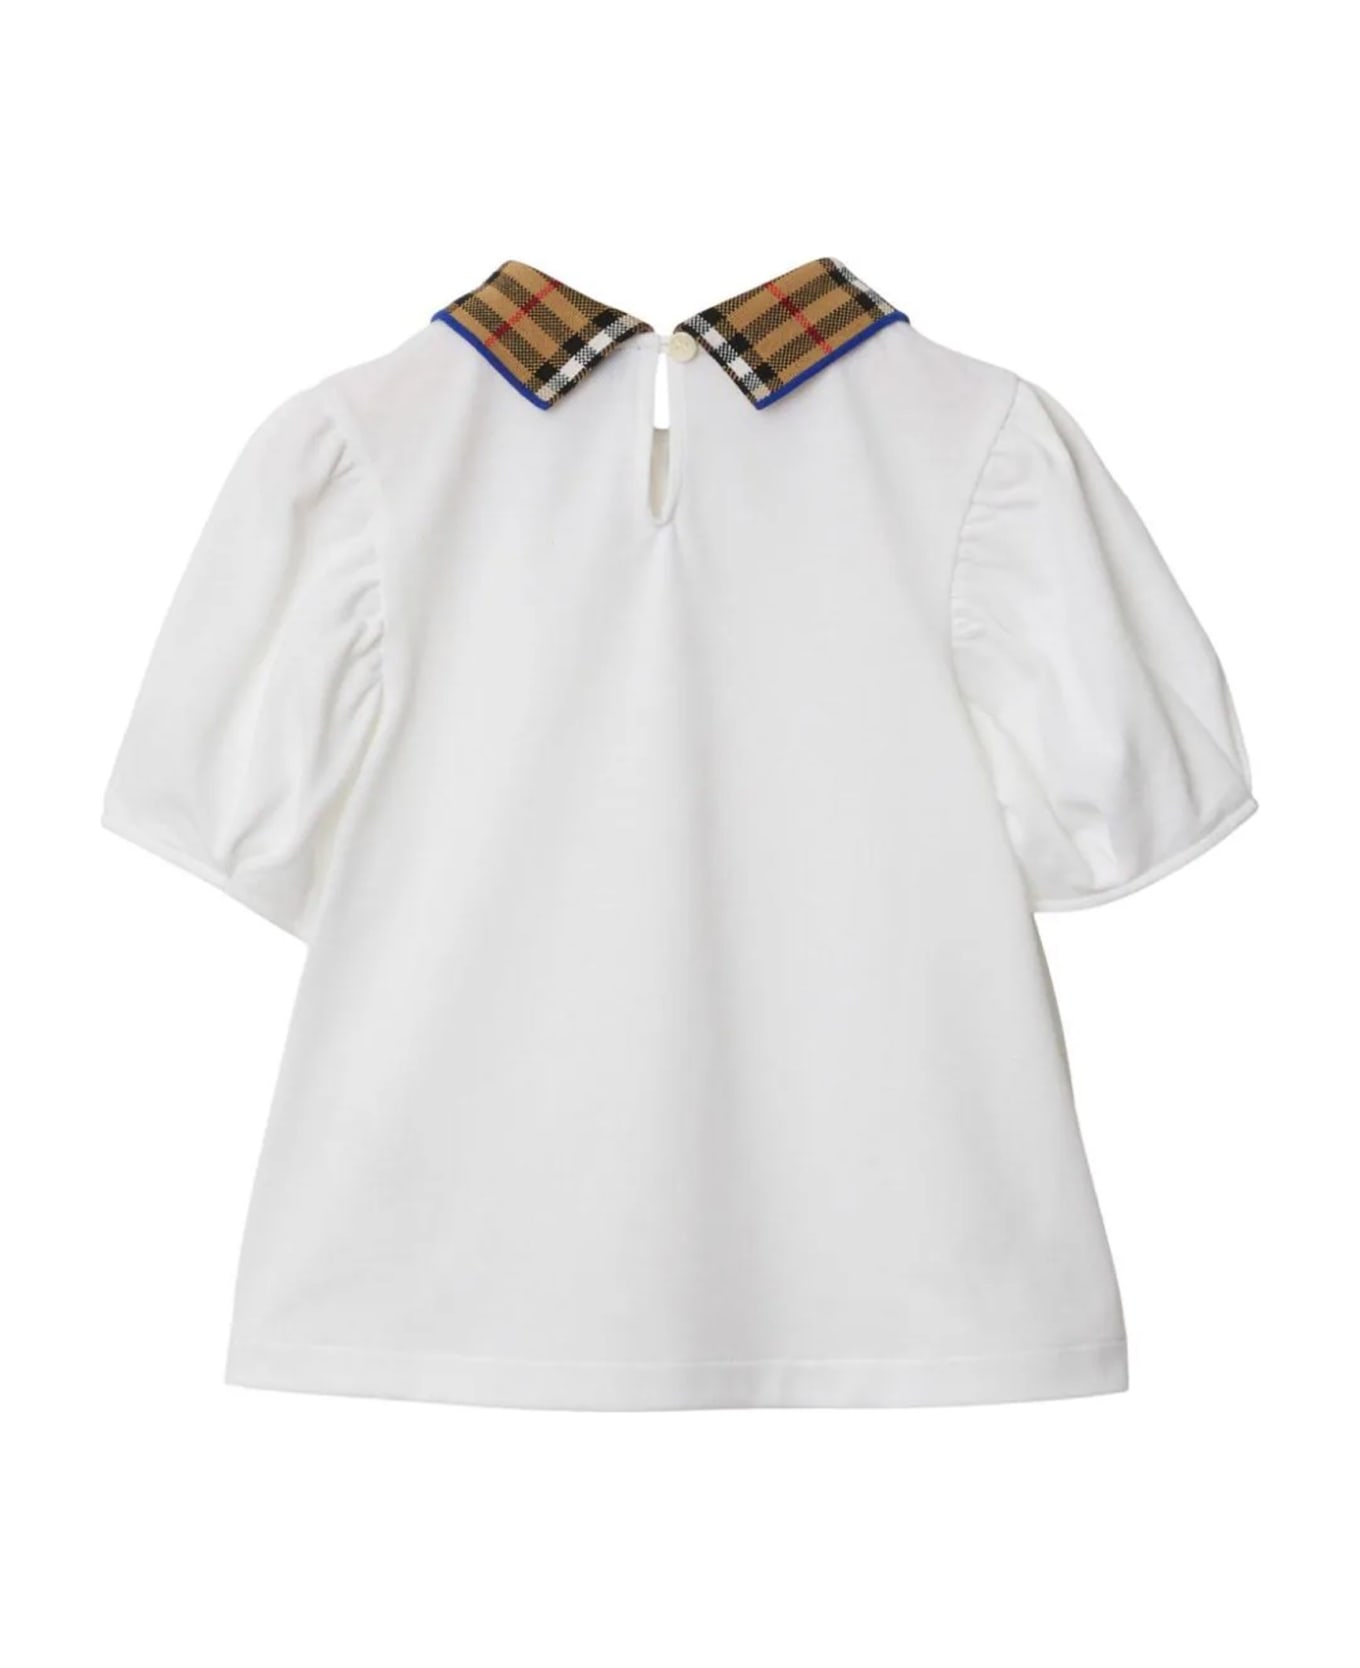 Burberry White Cotton Polo Shirt - White